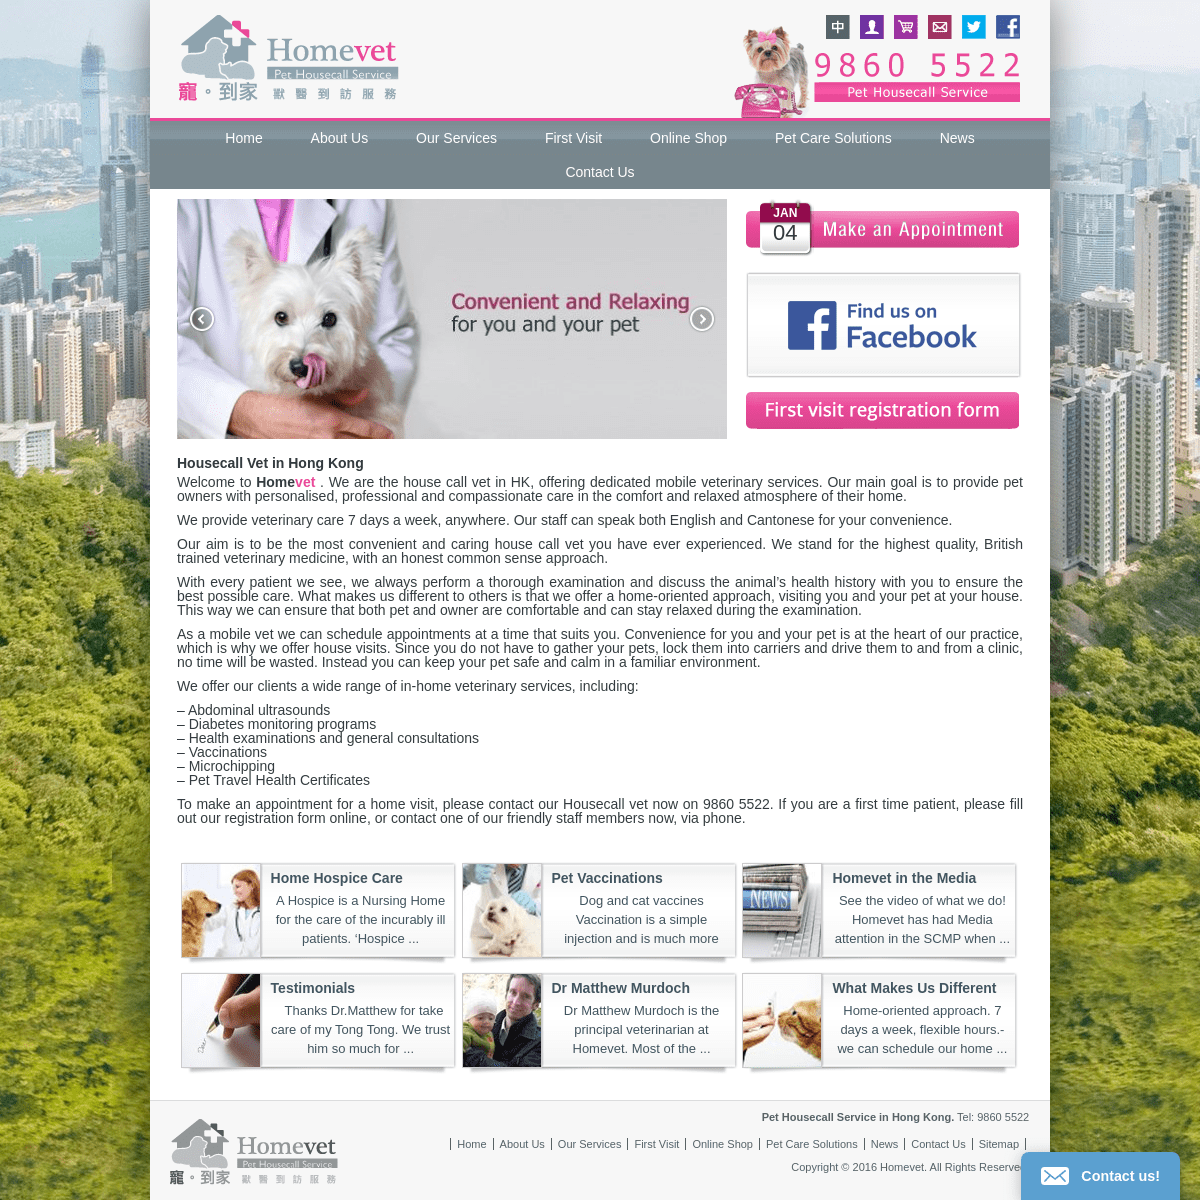 A complete backup of homevet.com.hk